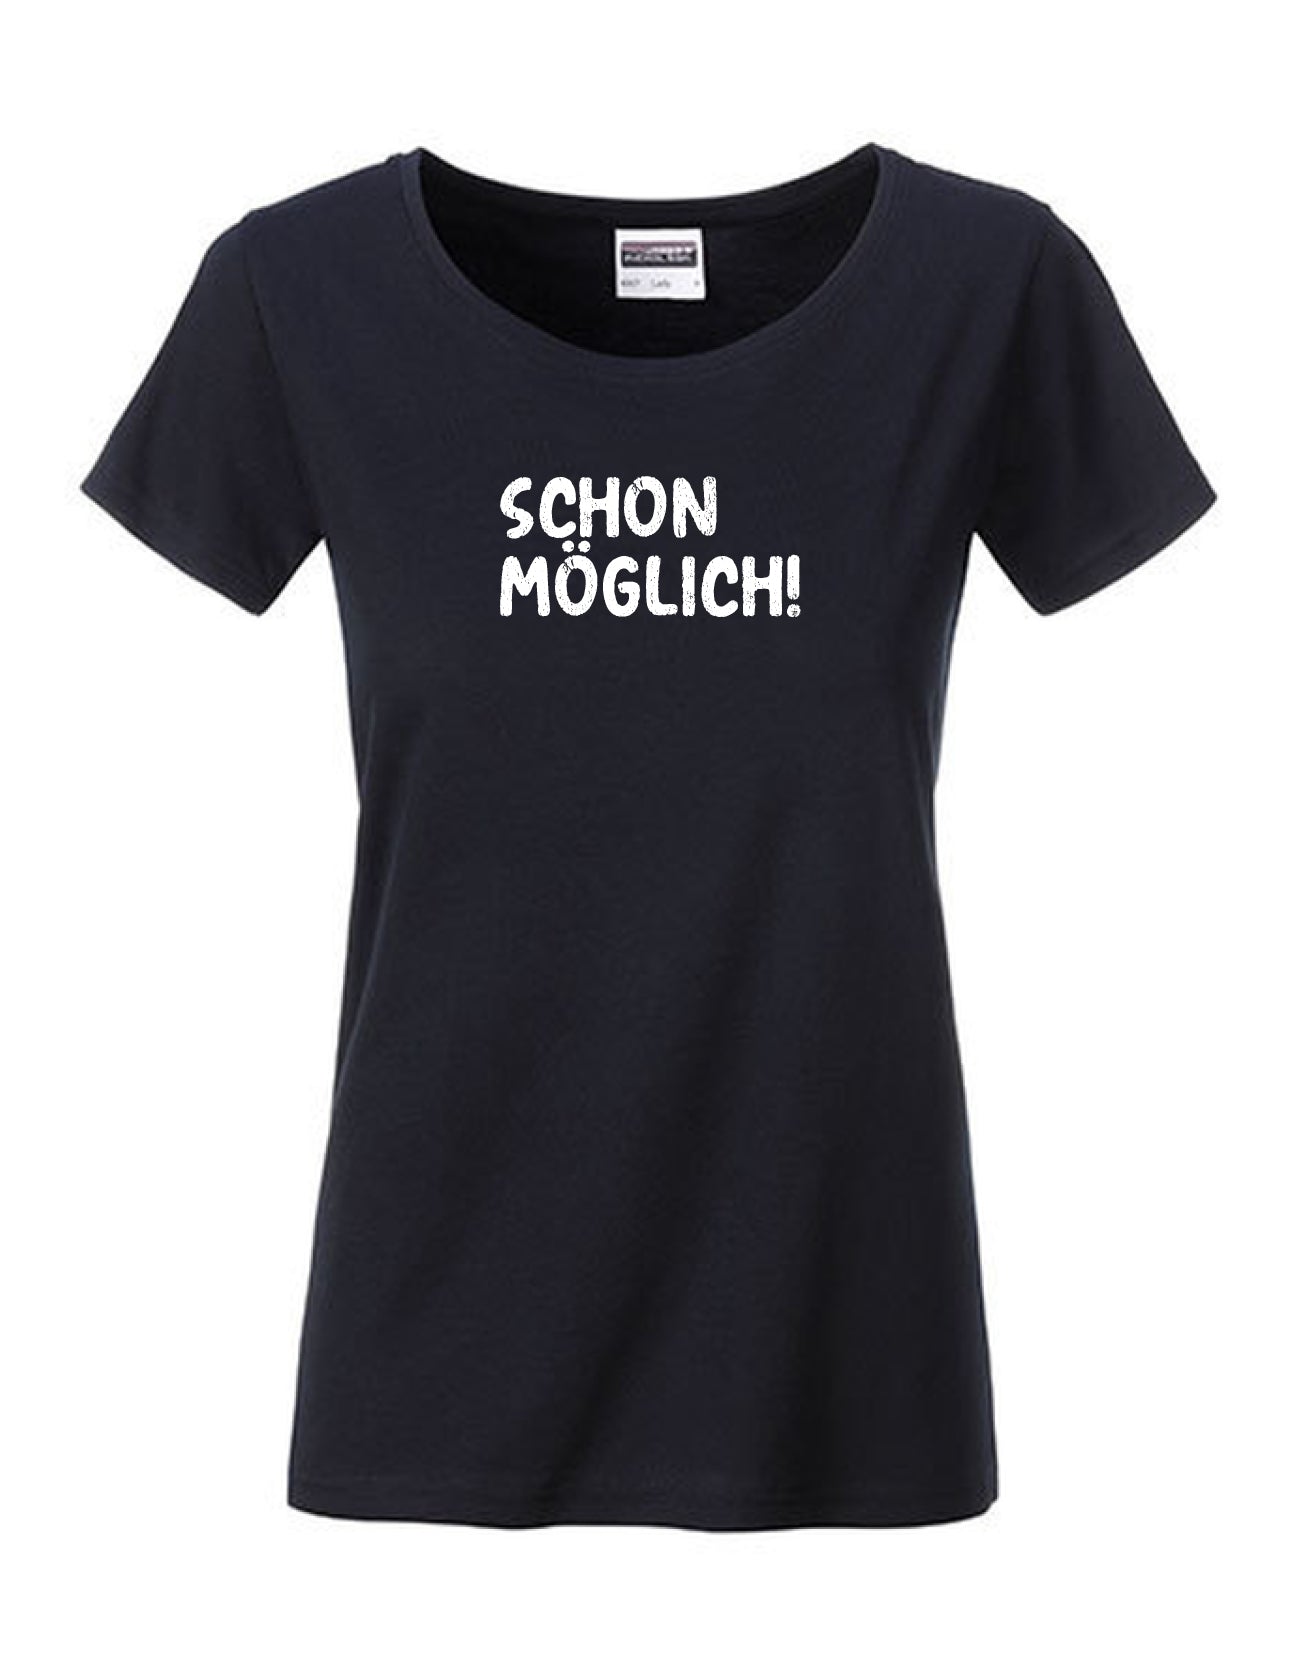 T-Shirt Frauen >>SCHON MÖGLICH!